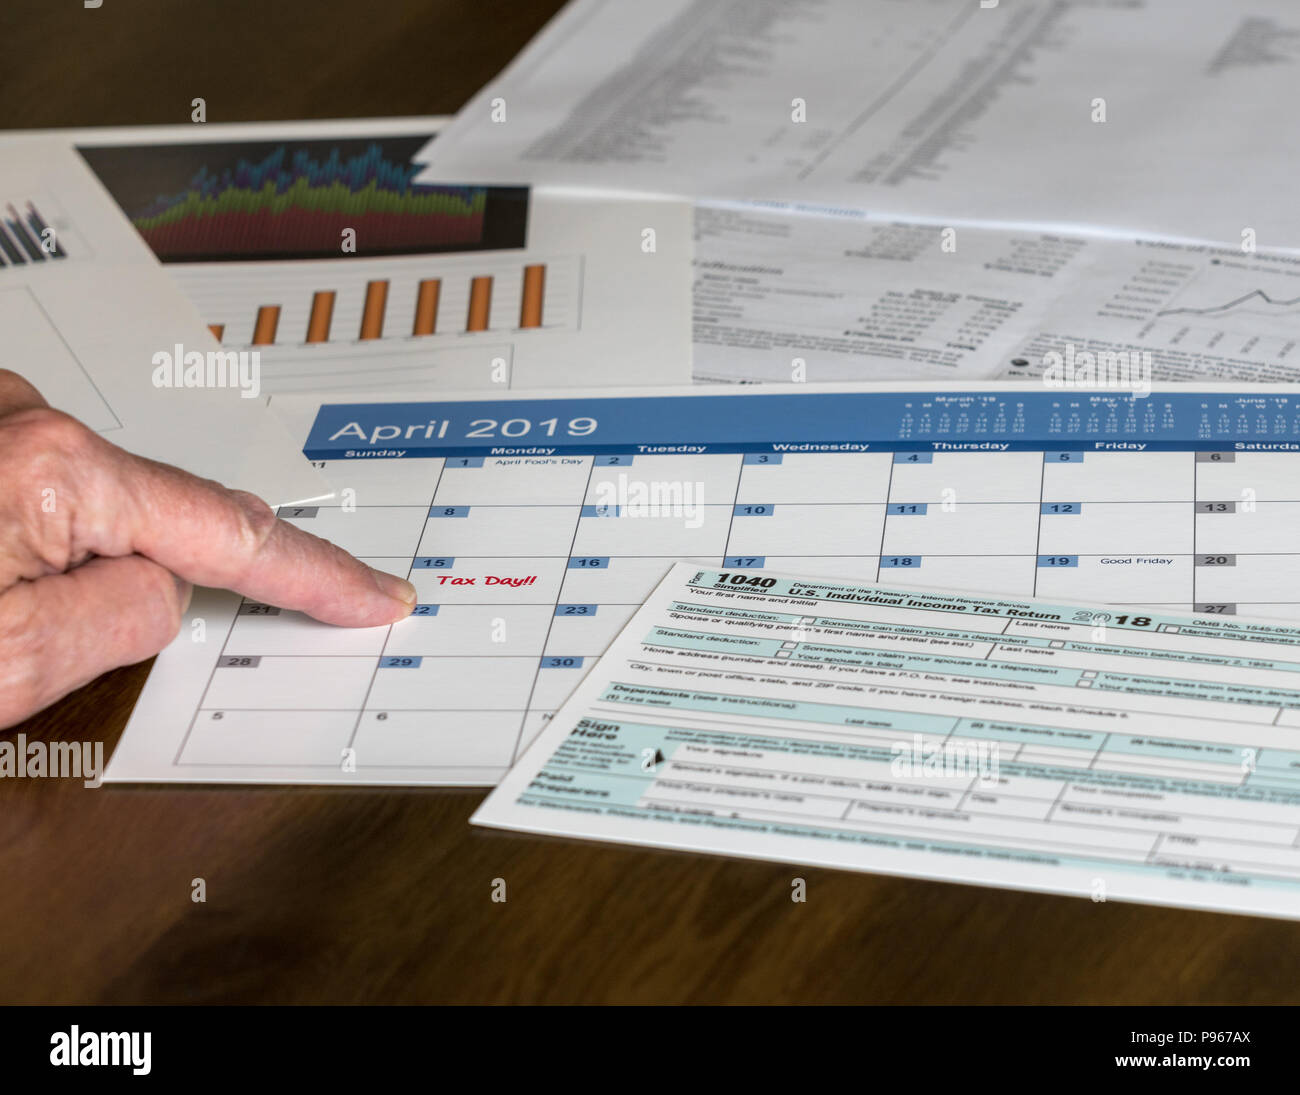 Form 1040 Vereinfachte ermöglicht die Einreichung von Steuern auf Postkarte Stockfoto